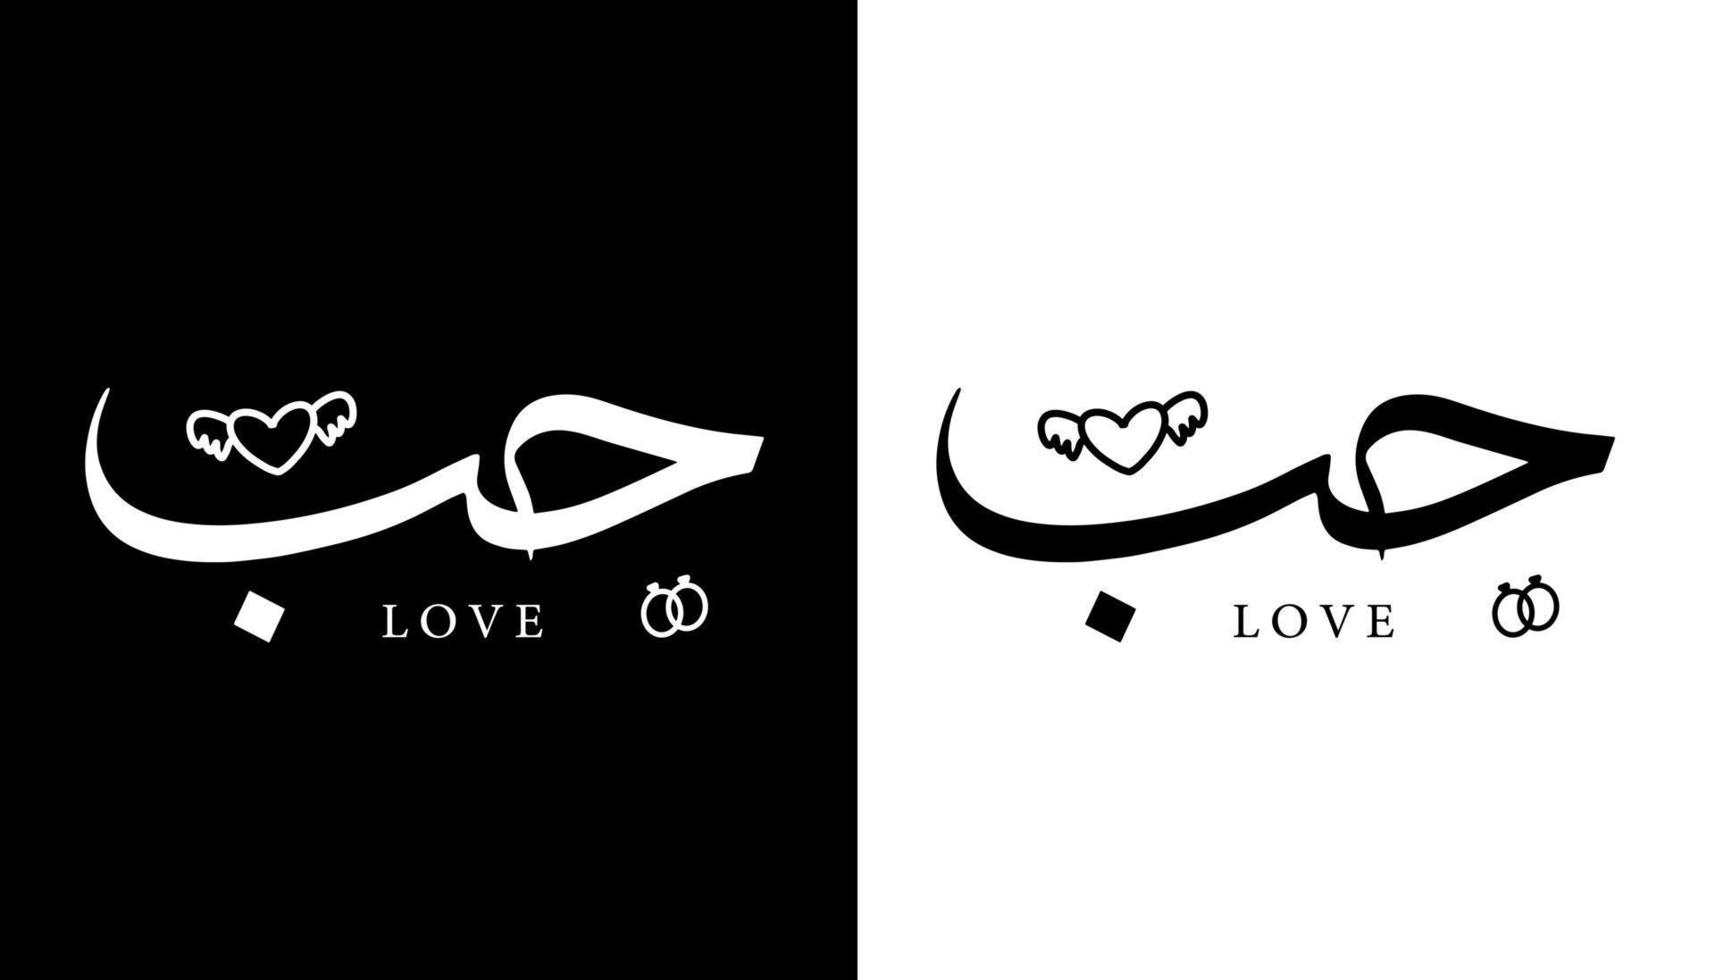 arabisk kalligrafi namn översatt "kärlek" arabiska bokstäver alfabet teckensnitt bokstäver islamisk logotyp vektorillustration vektor